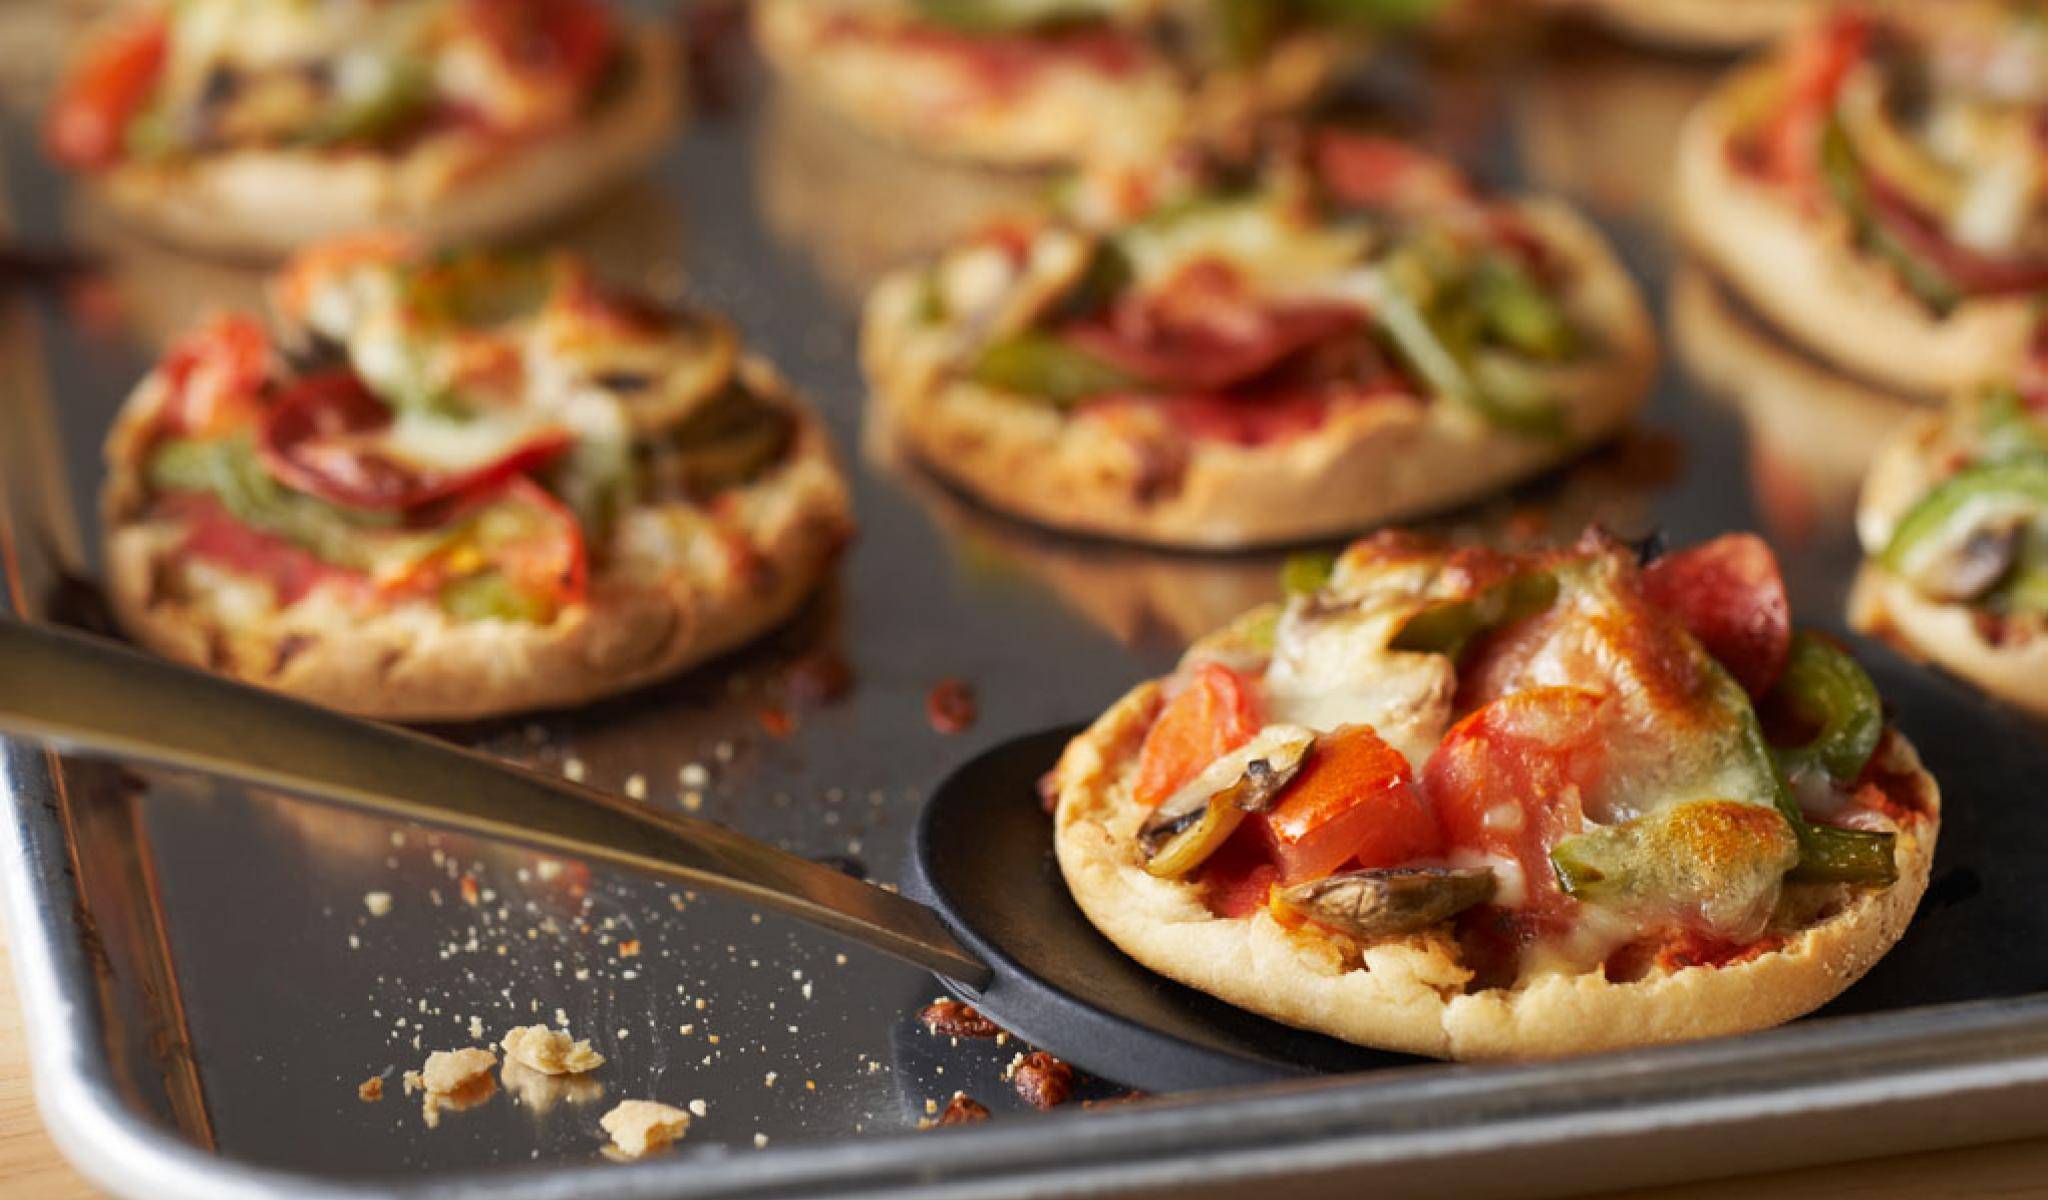 Мини-пицца: 7 пошаговых фото-рецептов